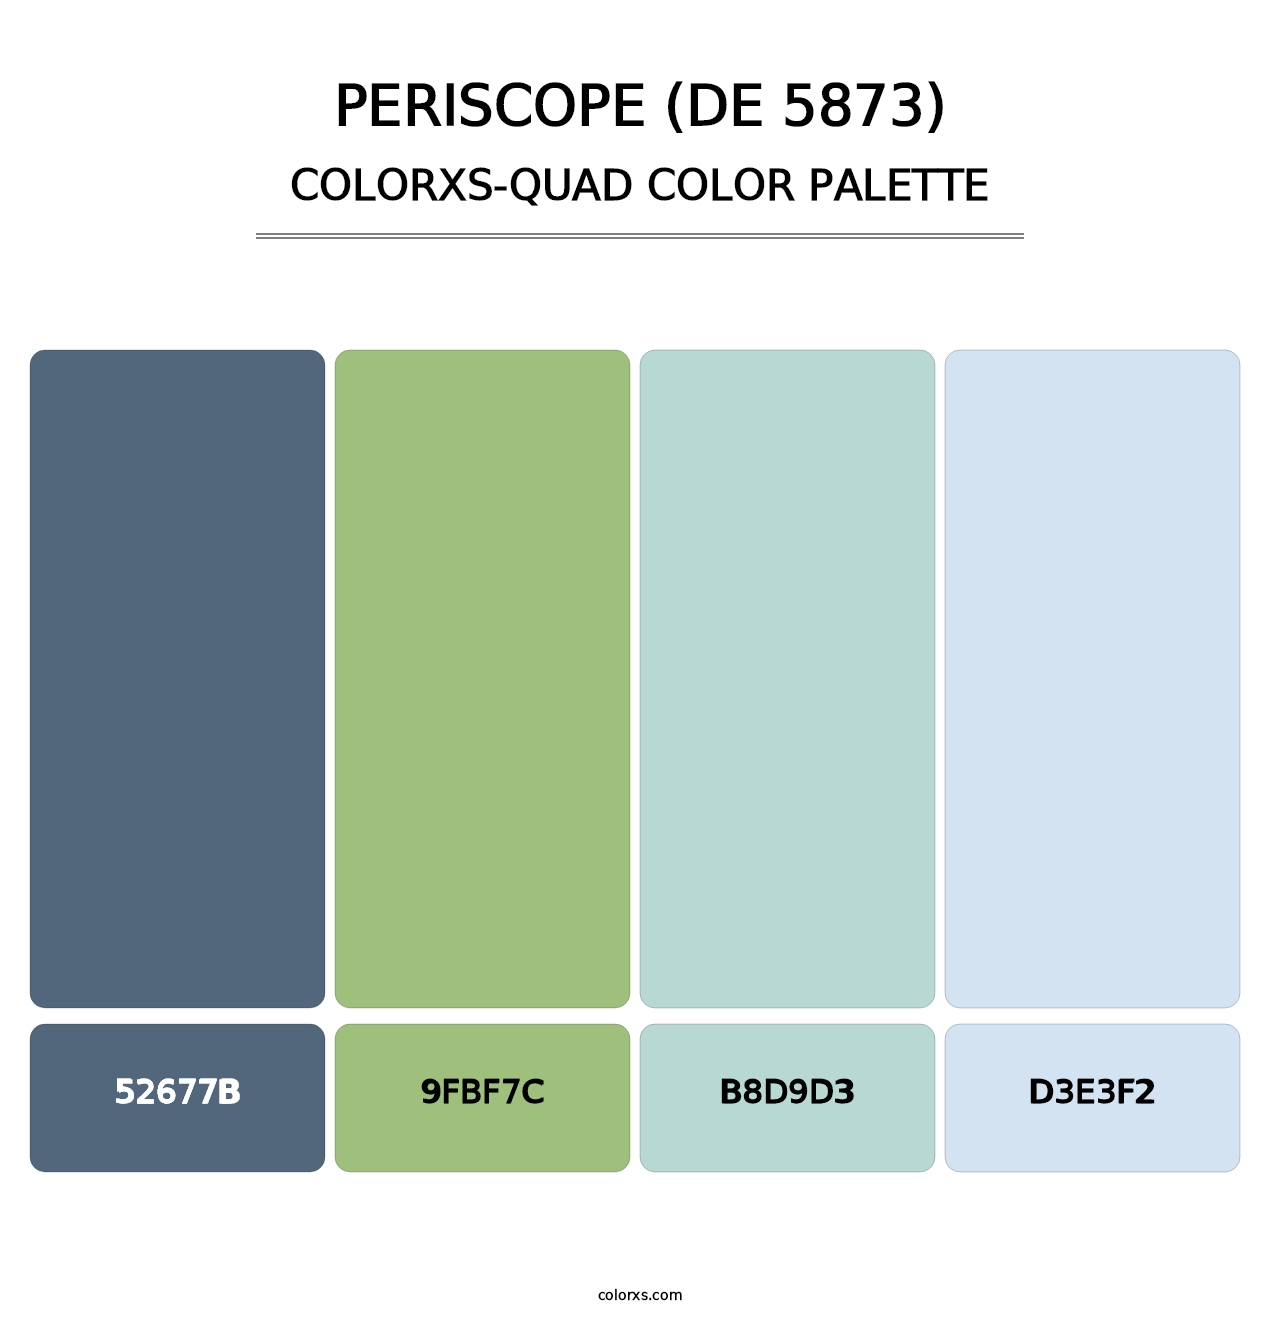 Periscope (DE 5873) - Colorxs Quad Palette